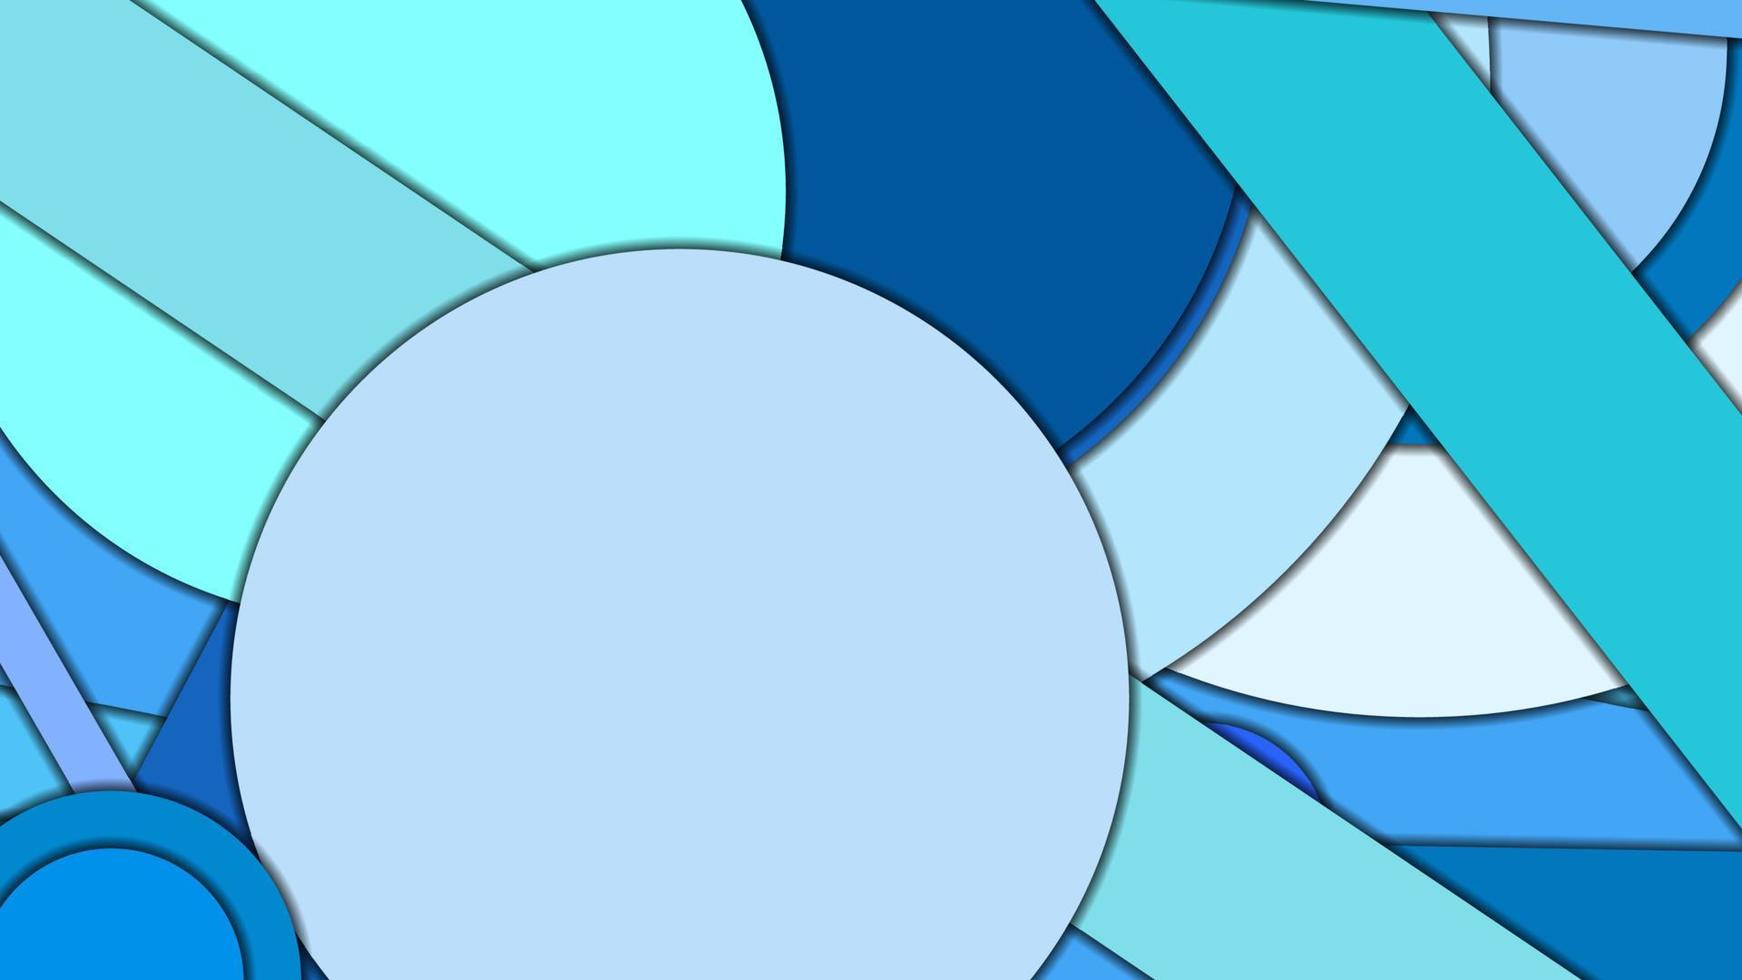 arrière-plan vectoriel géométrique abstrait dans un style de conception matérielle avec une palette harmonisée limitée, avec des cercles concentriques et des rectangles tournés avec des ombres, imitant le papier découpé.